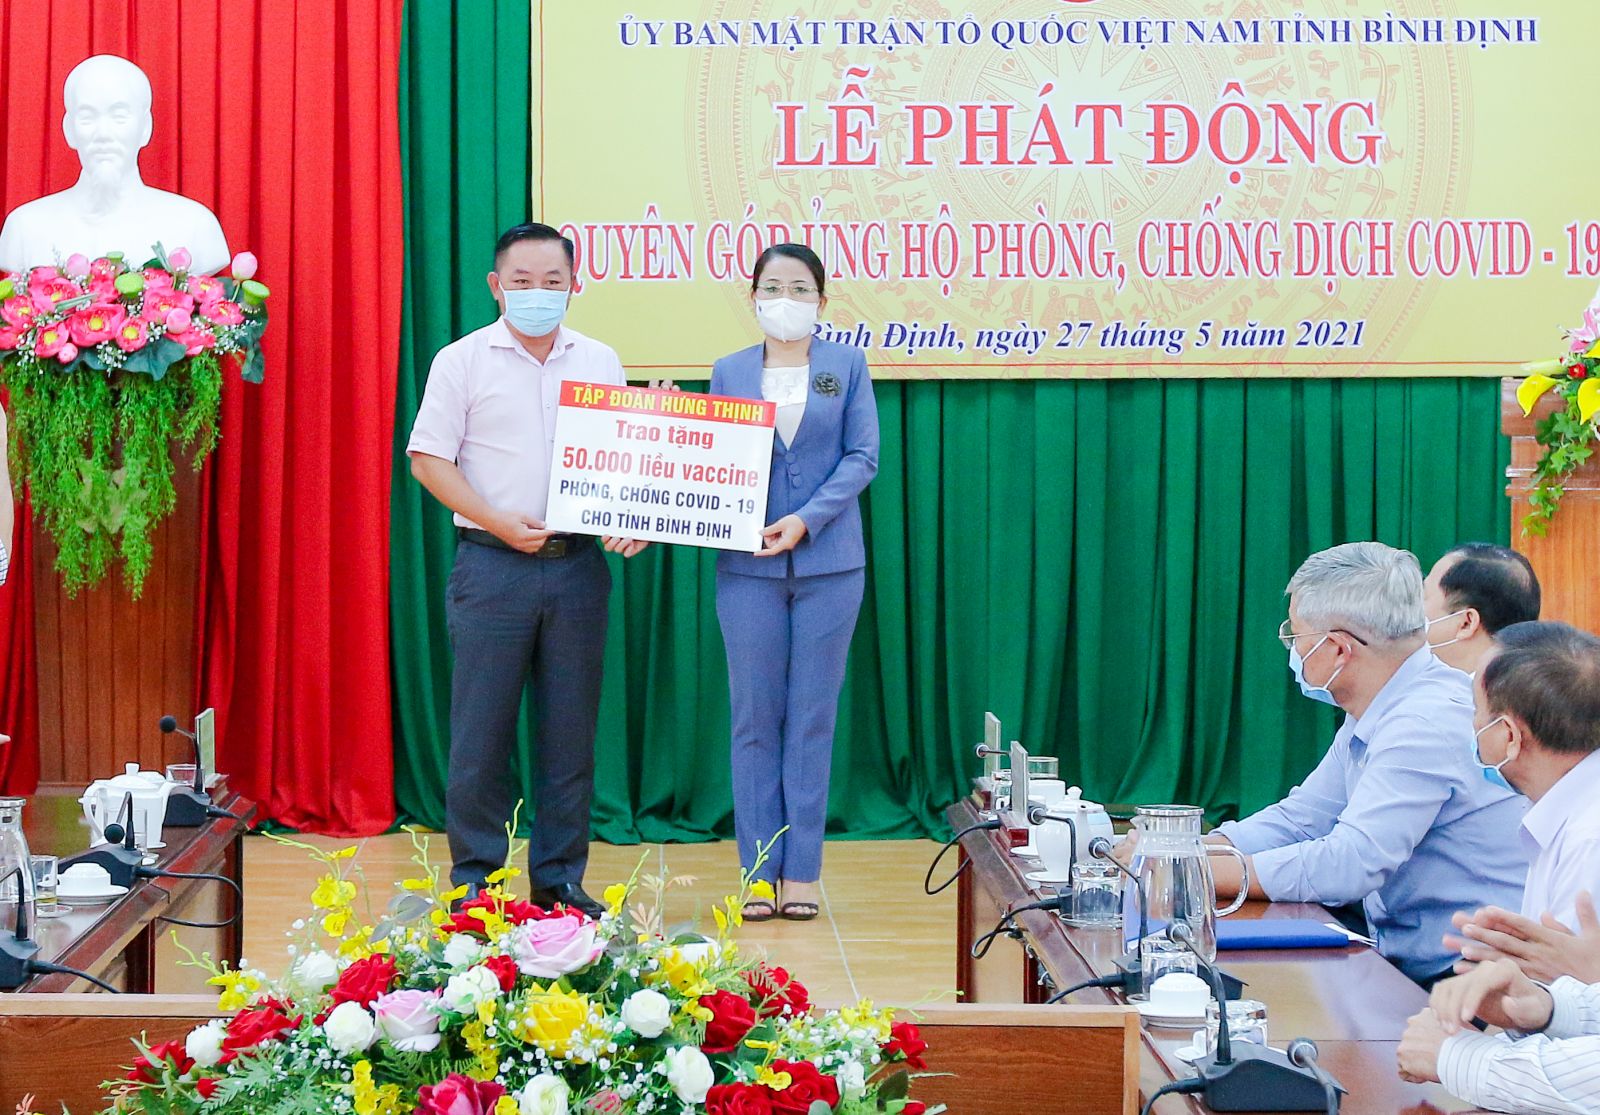 Ông Nguyễn Hữu Sang đại diện Tập đoàn Hưng Thịnh trao tặng 50.000 liều vắc-xin phòng, chống Covid-19 cho tỉnh Bình Định